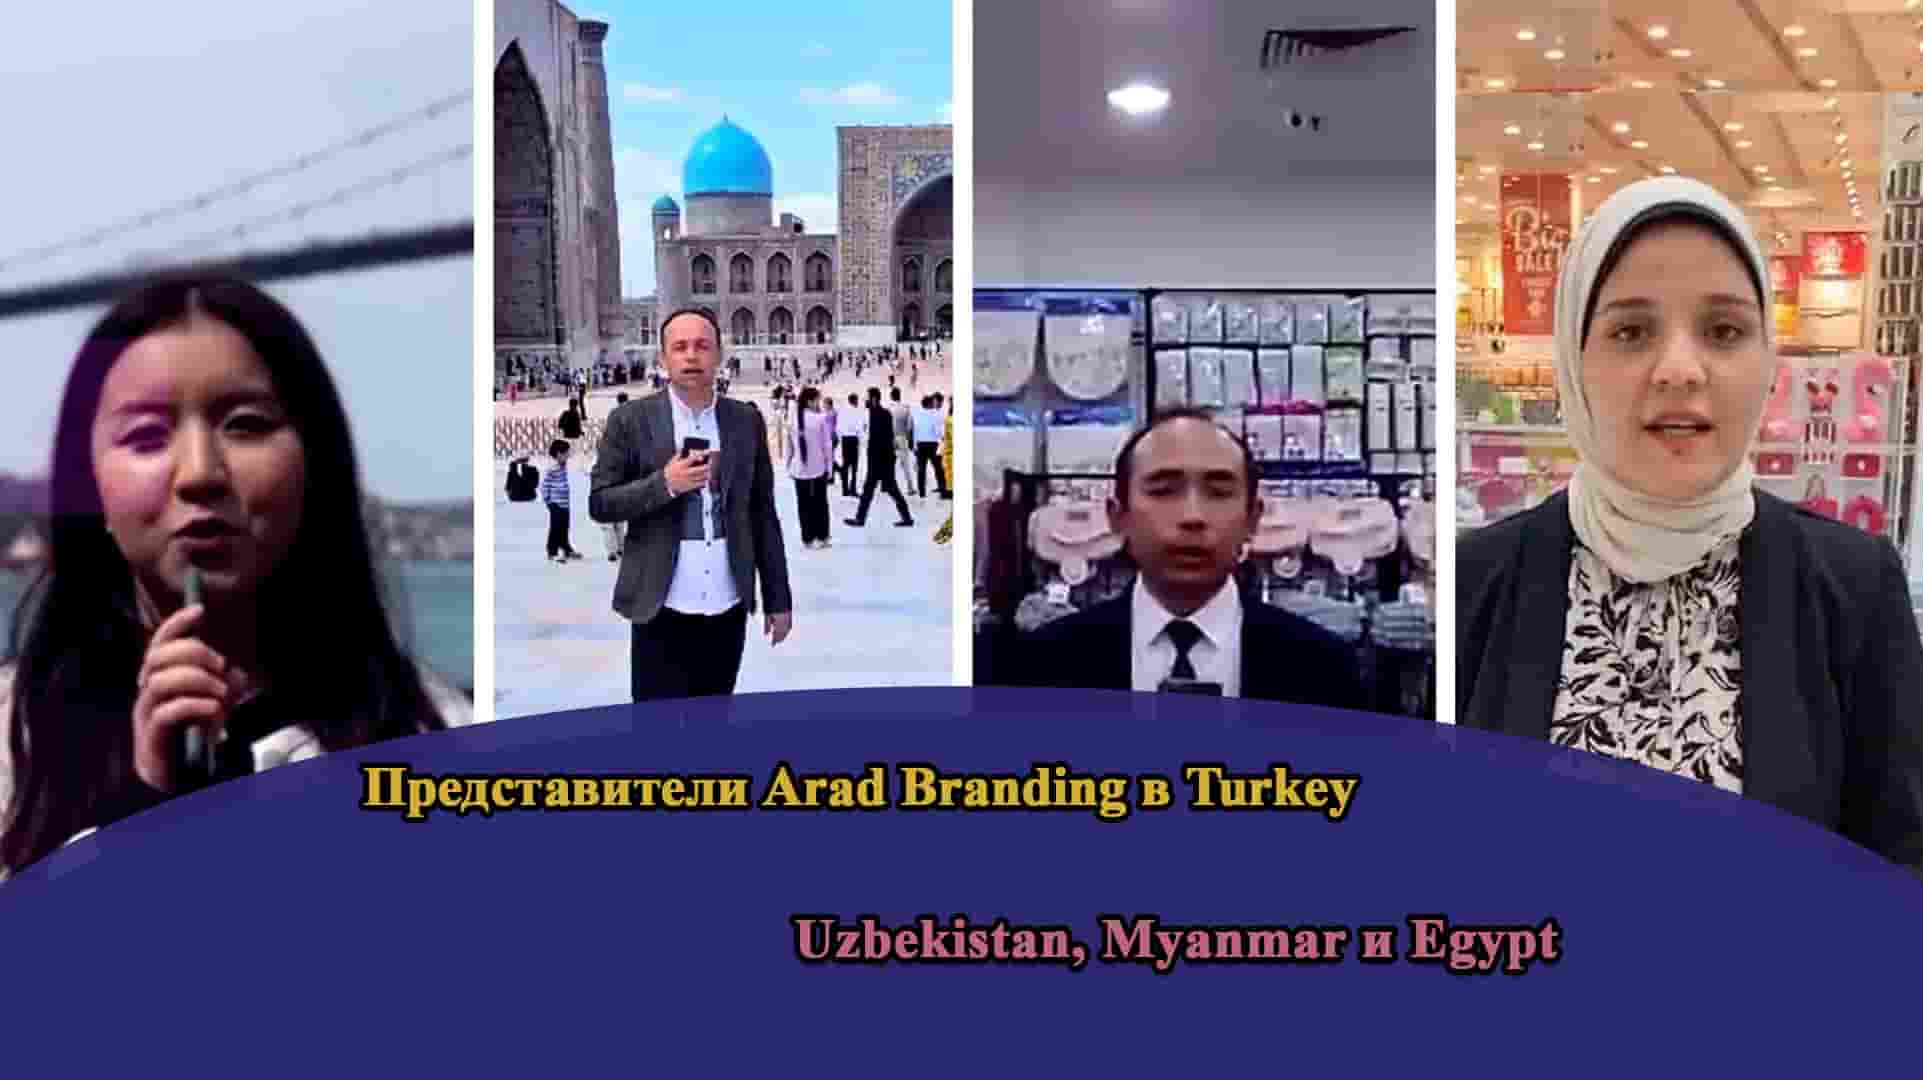 Зарубежные представители Arad Branding в Uzbekistan, Myanmar, Egypt и Turkey и общение с ними торговцев Arad